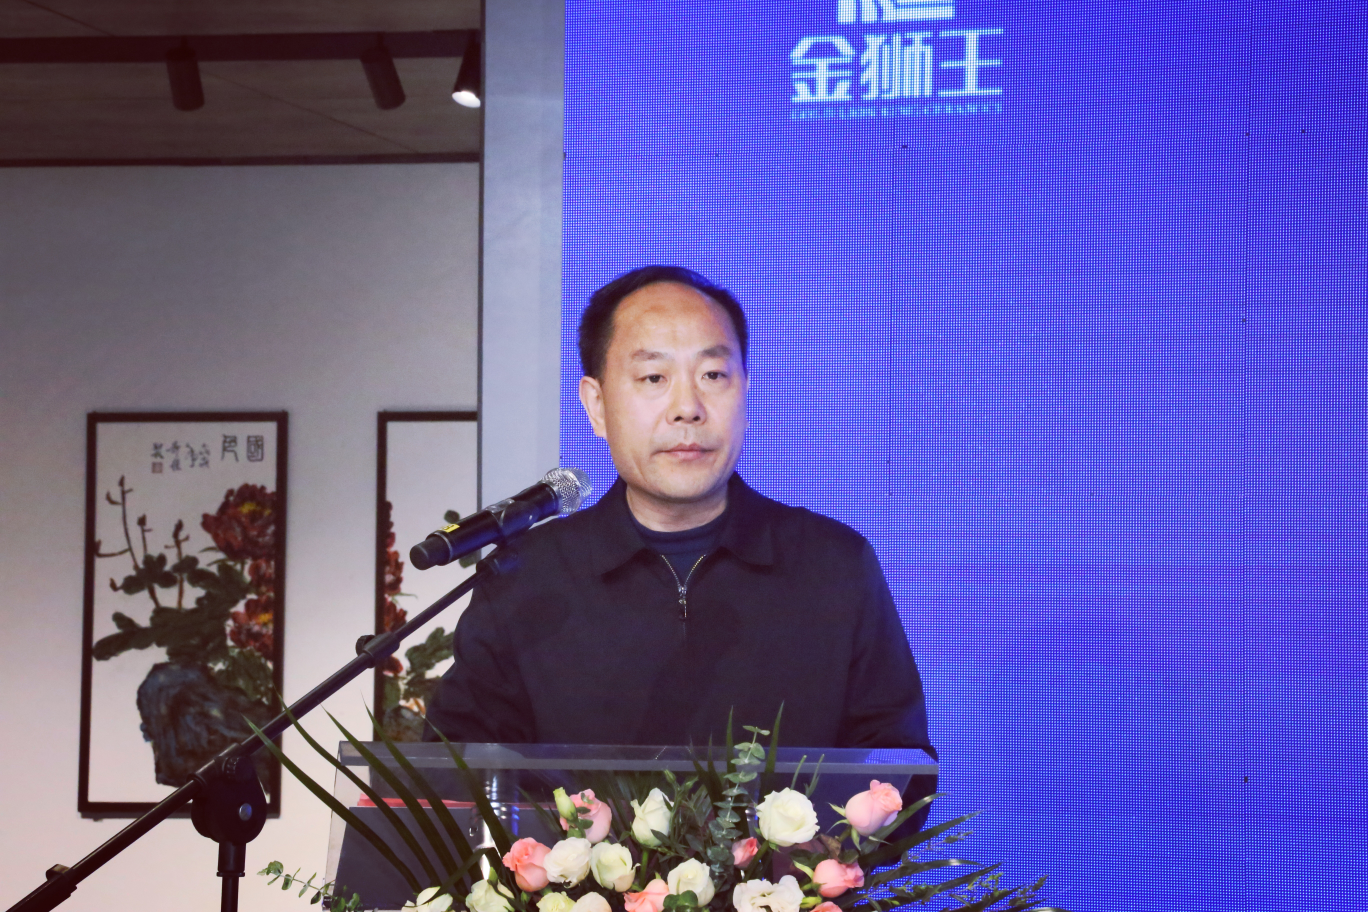 正如淄博市委宣传部副部长朱玉友在发布会讲话中所表